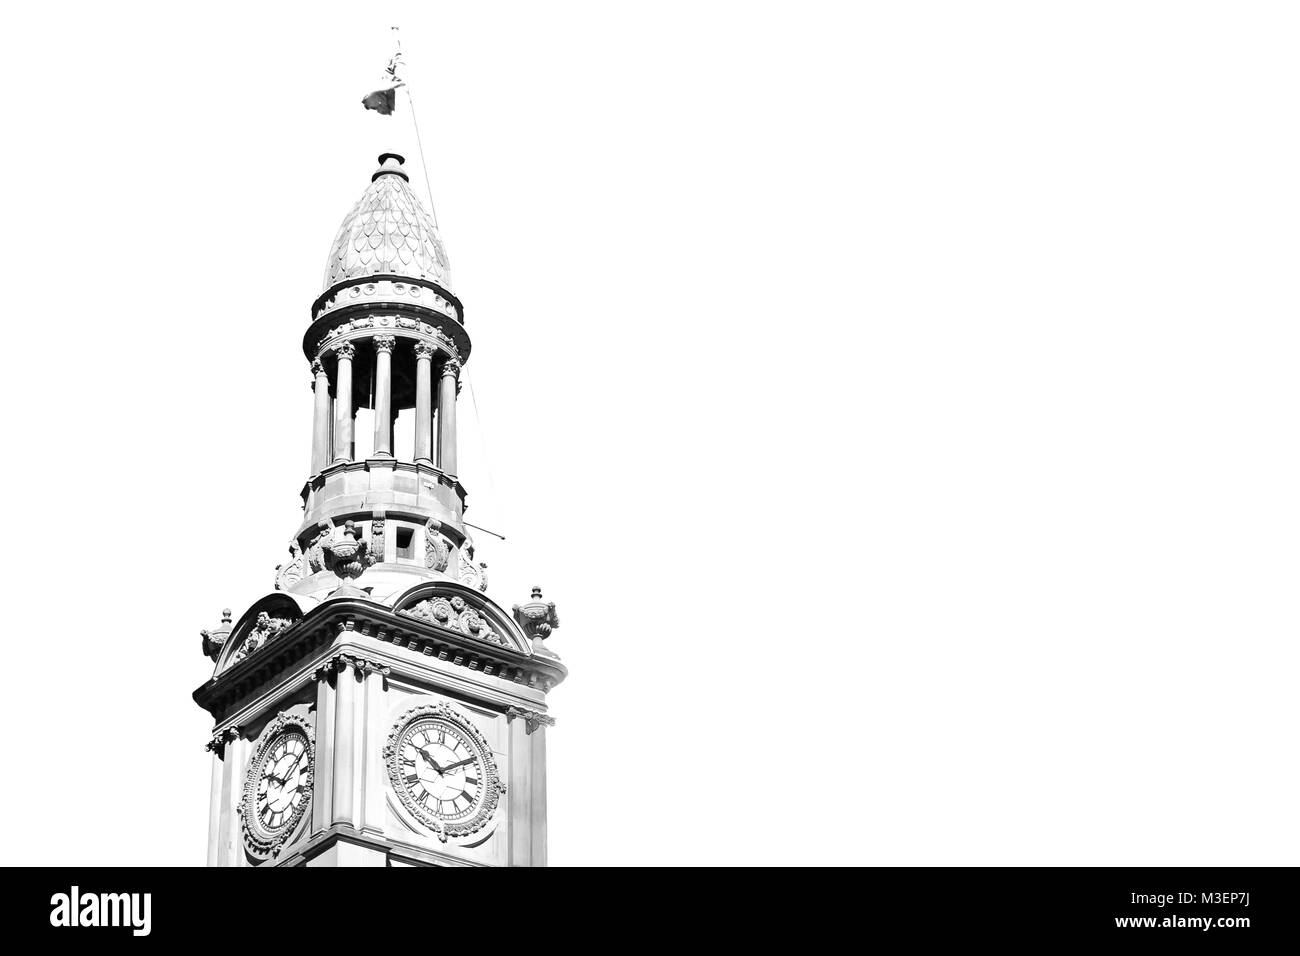 En australie sydney l'antique tour de l'horloge dans le ciel Banque D'Images